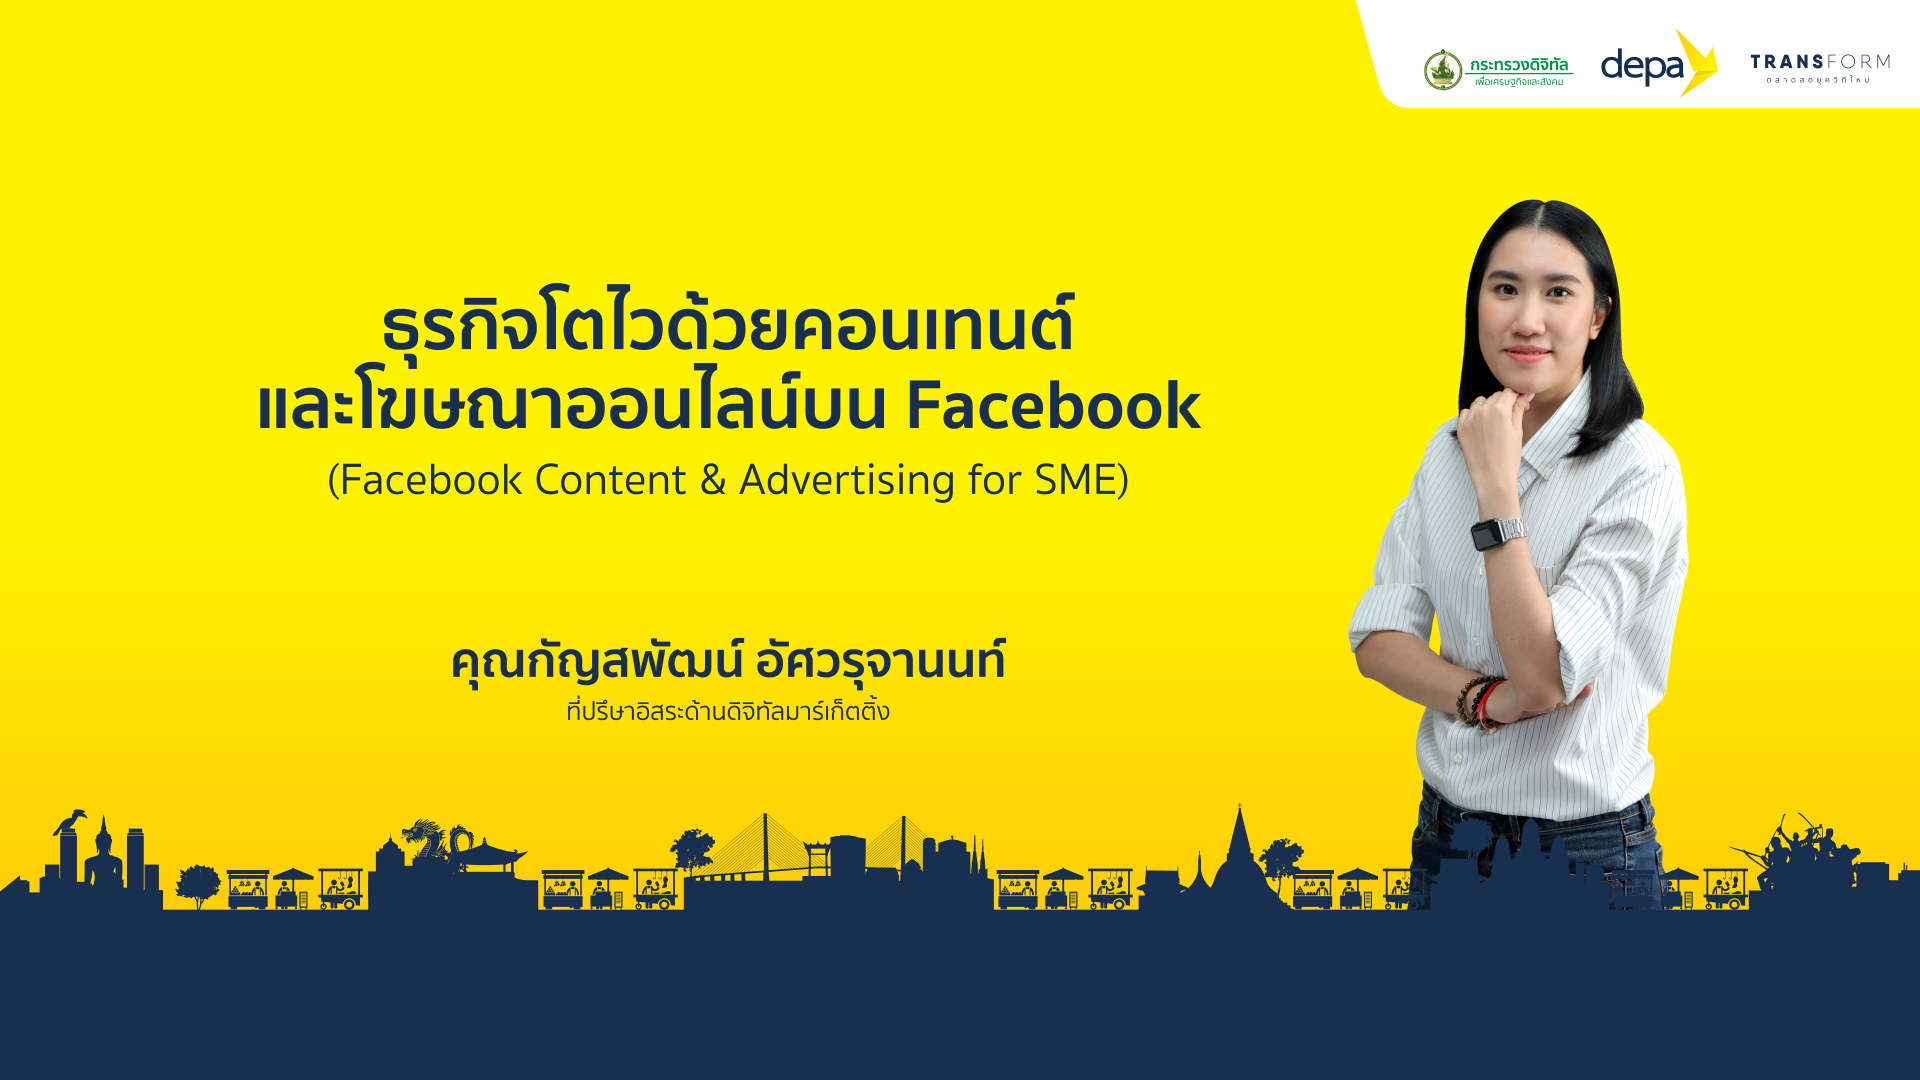 Facebook Content & Advertising for SME Facebook_depa